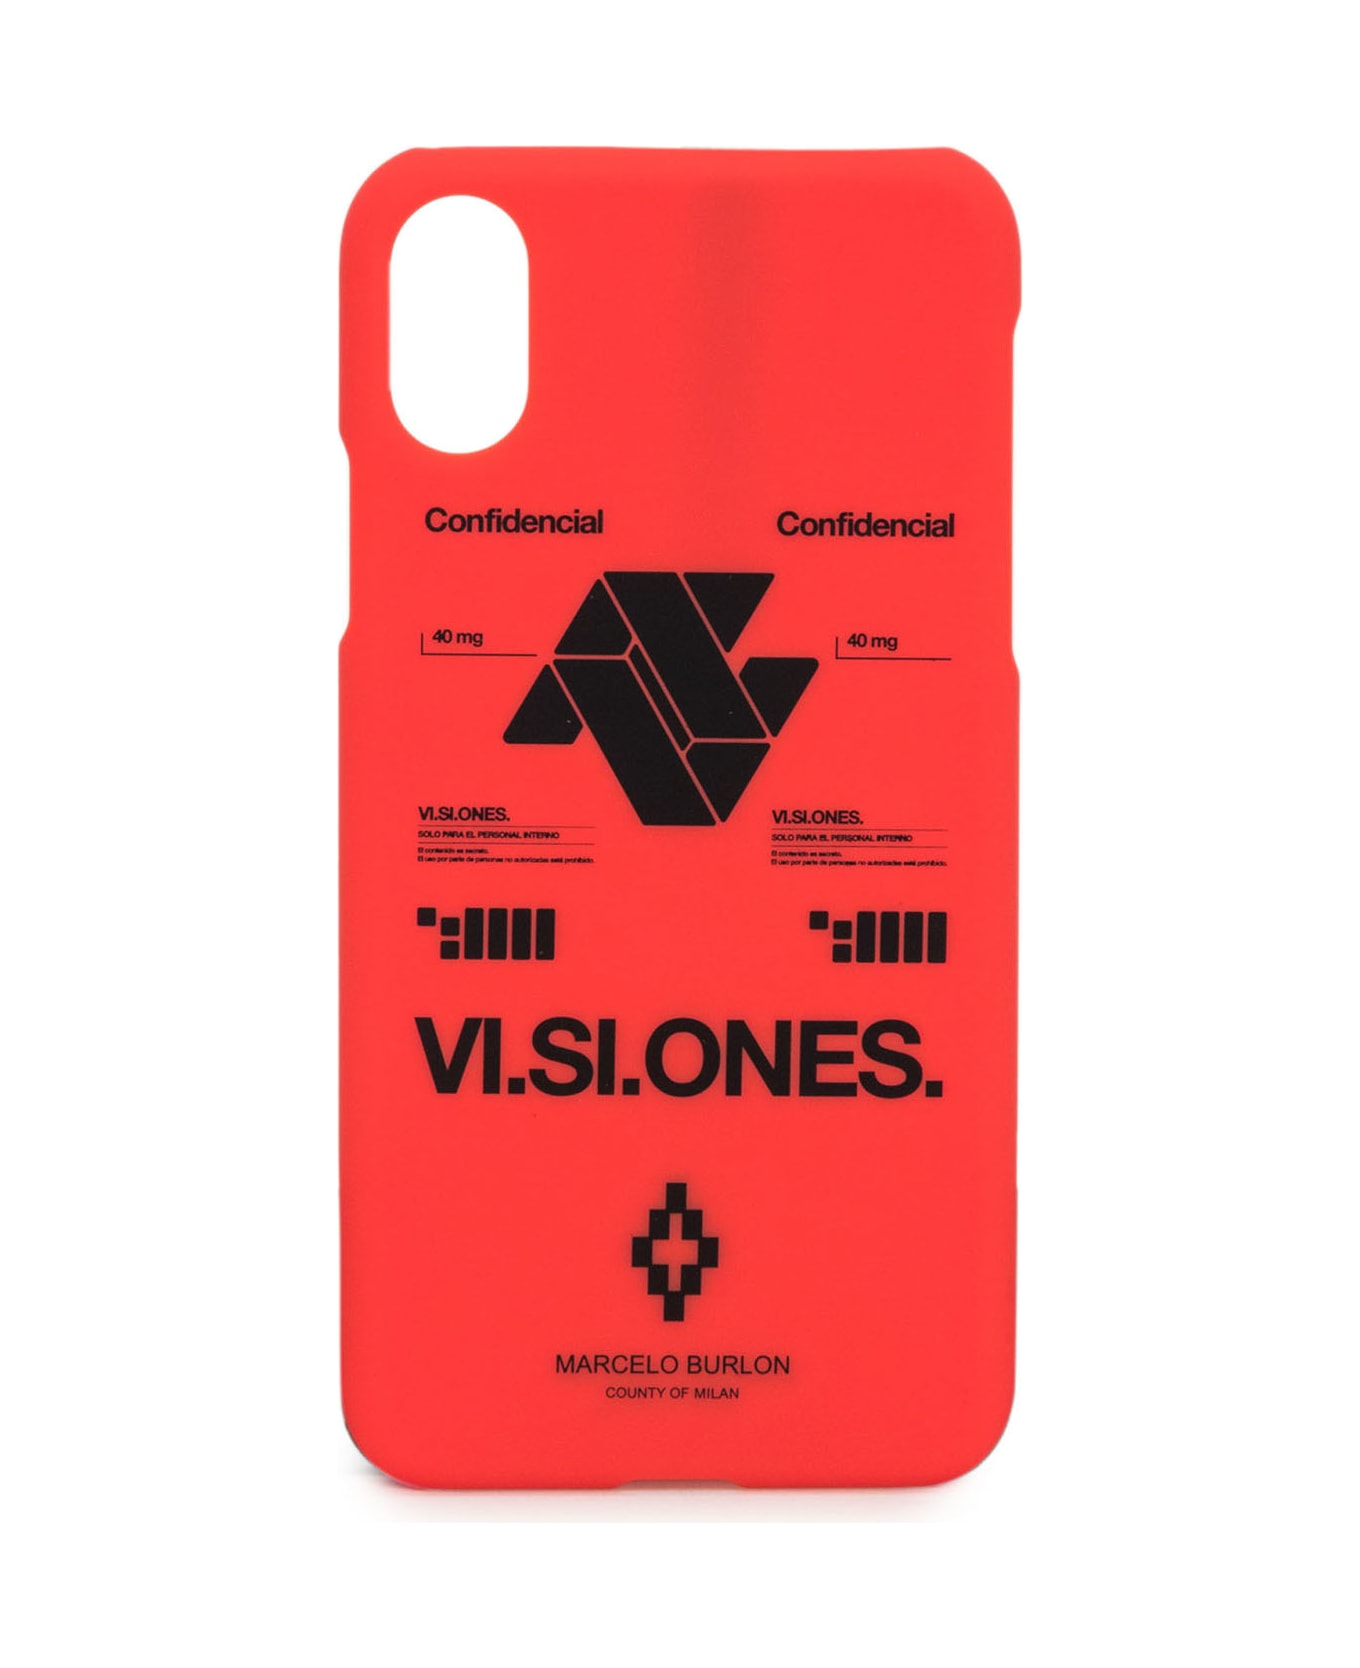 Marcelo Burlon Iphone X Case - NERO デジタルアクセサリー